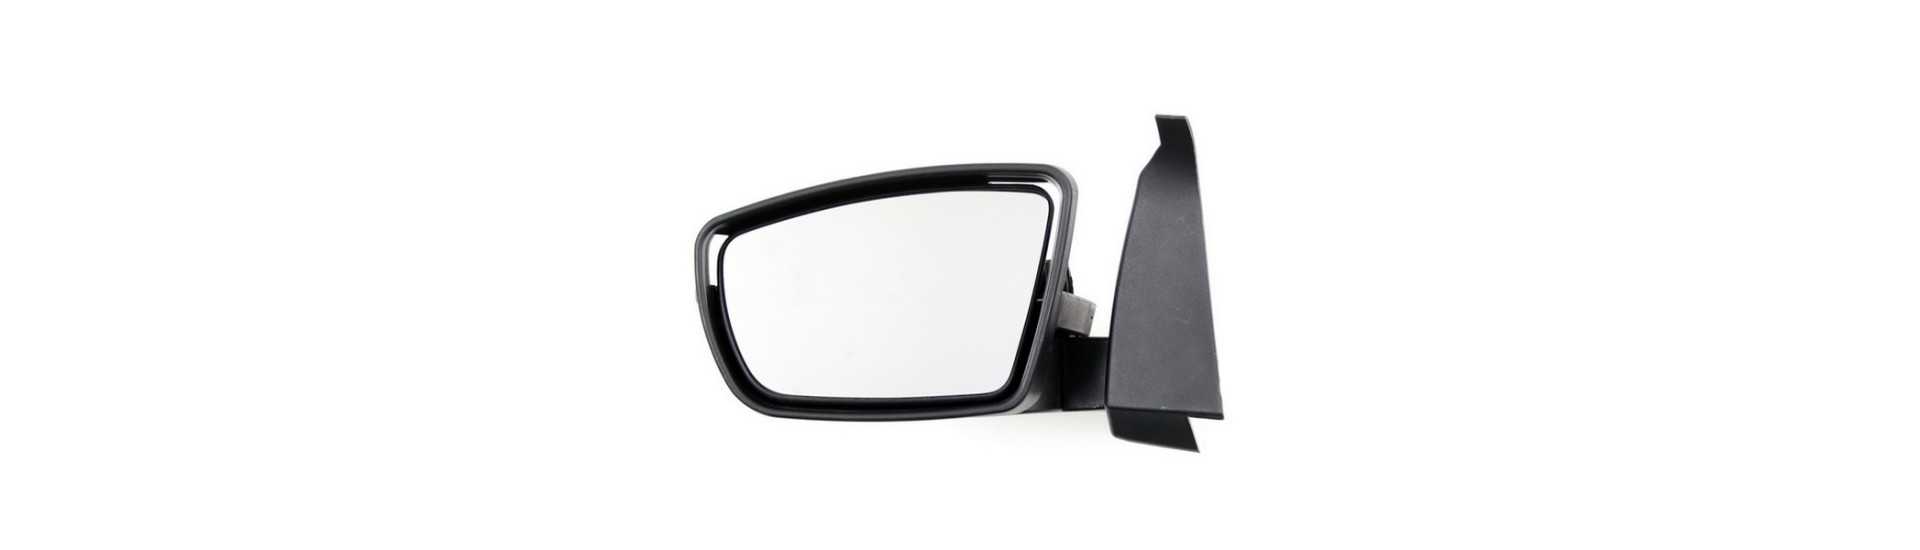 Miroir de rétroviseur droit voiture sans pemis Casalini M14 2.0 M20